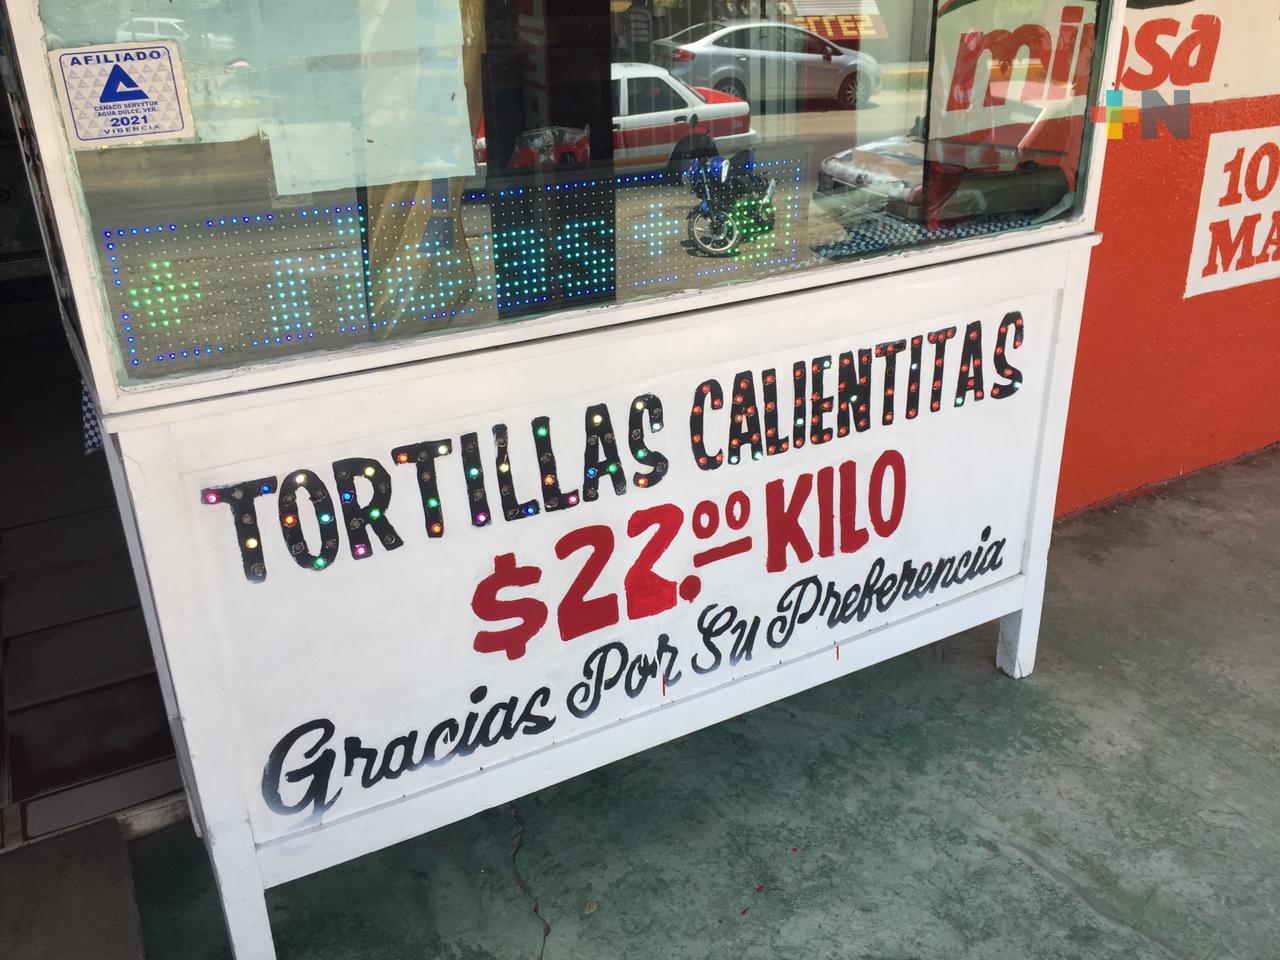 Kilo de tortillas cuesta 22 pesos en municipio de Agua Dulce, precio más caro en el sur